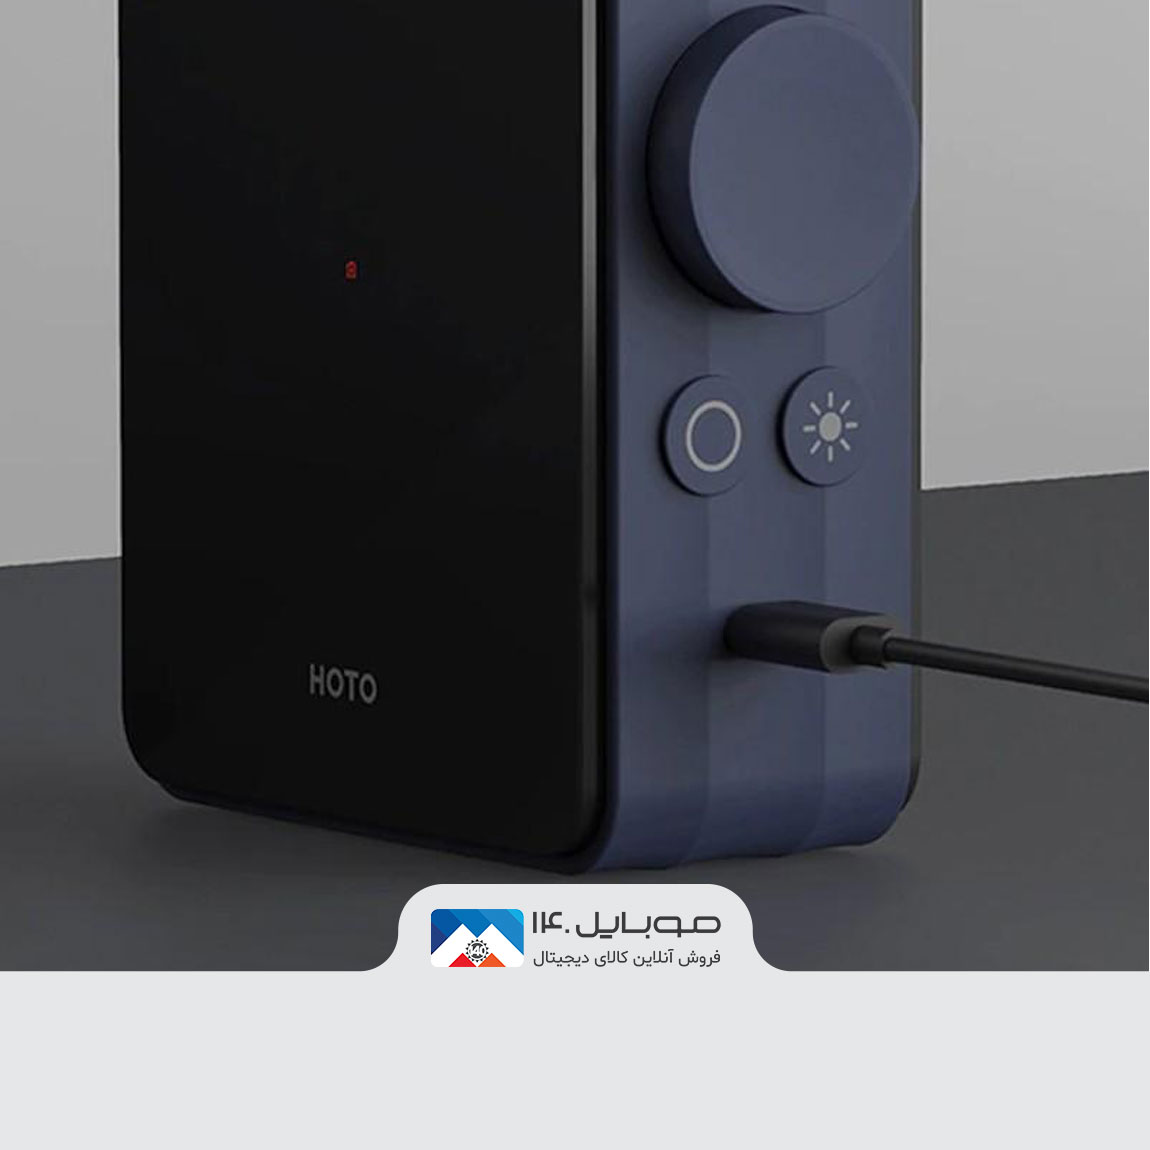 Xiaomi Hoto QWCQB001 Portable Electric Air Compressor 3